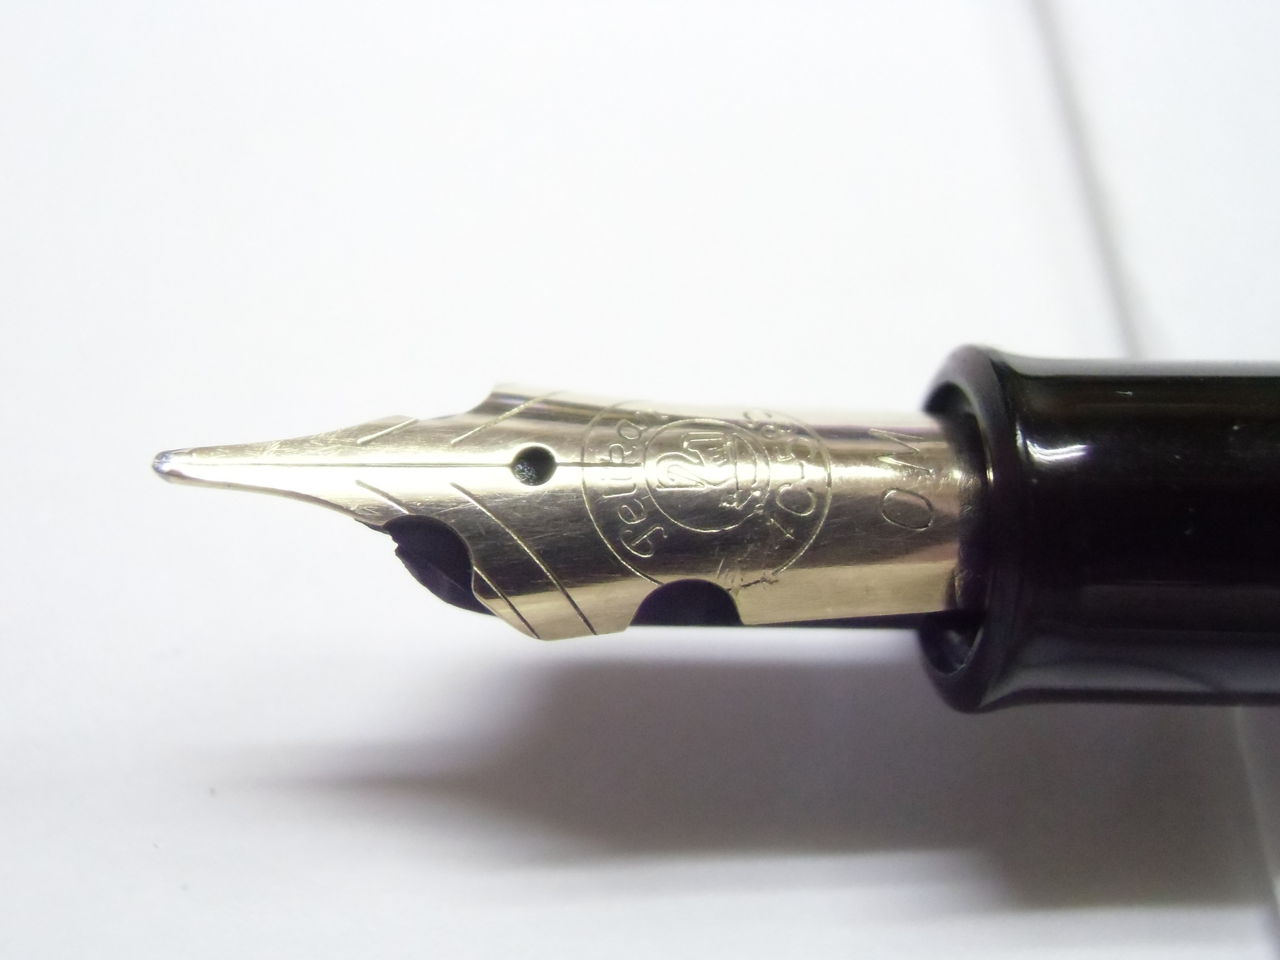 品質満点 hihihiさん購入予約 フォルカン(特殊ペン先万年筆 筆記具 